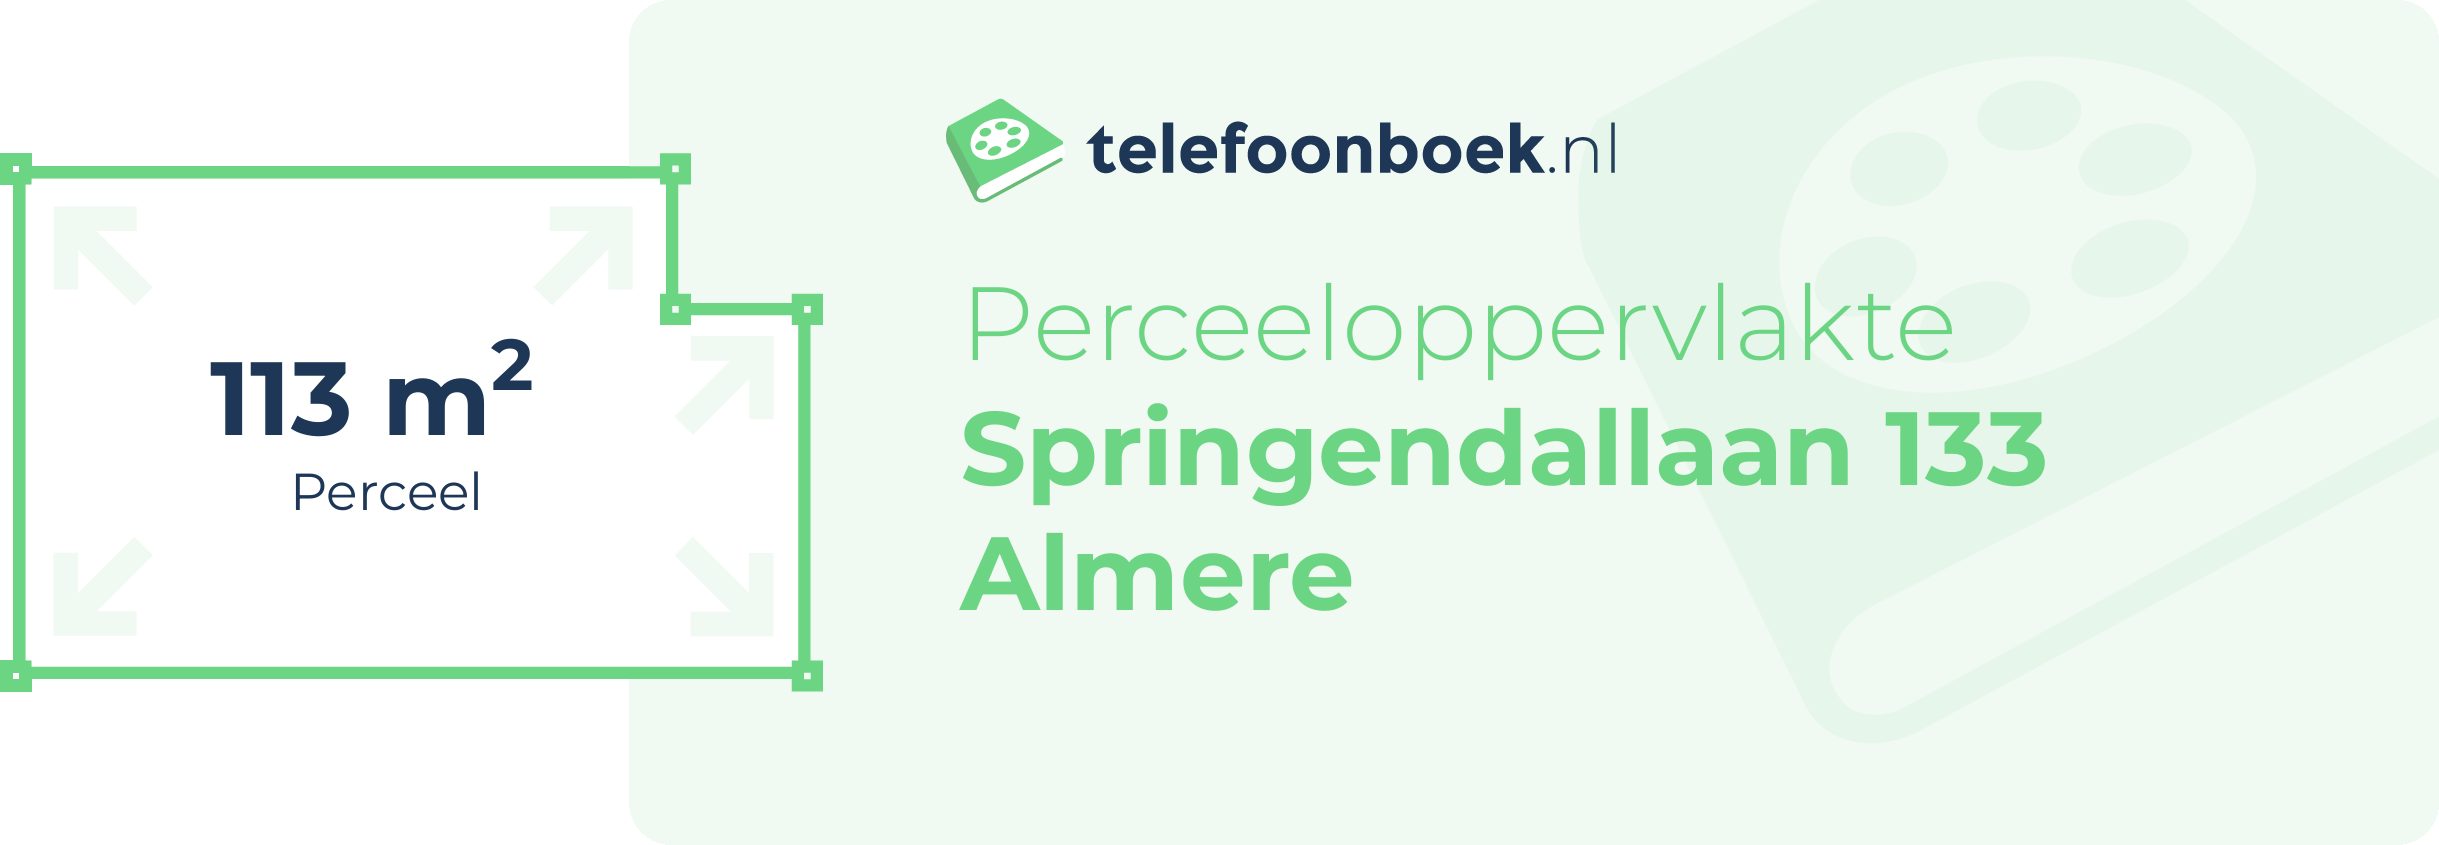 Perceeloppervlakte Springendallaan 133 Almere